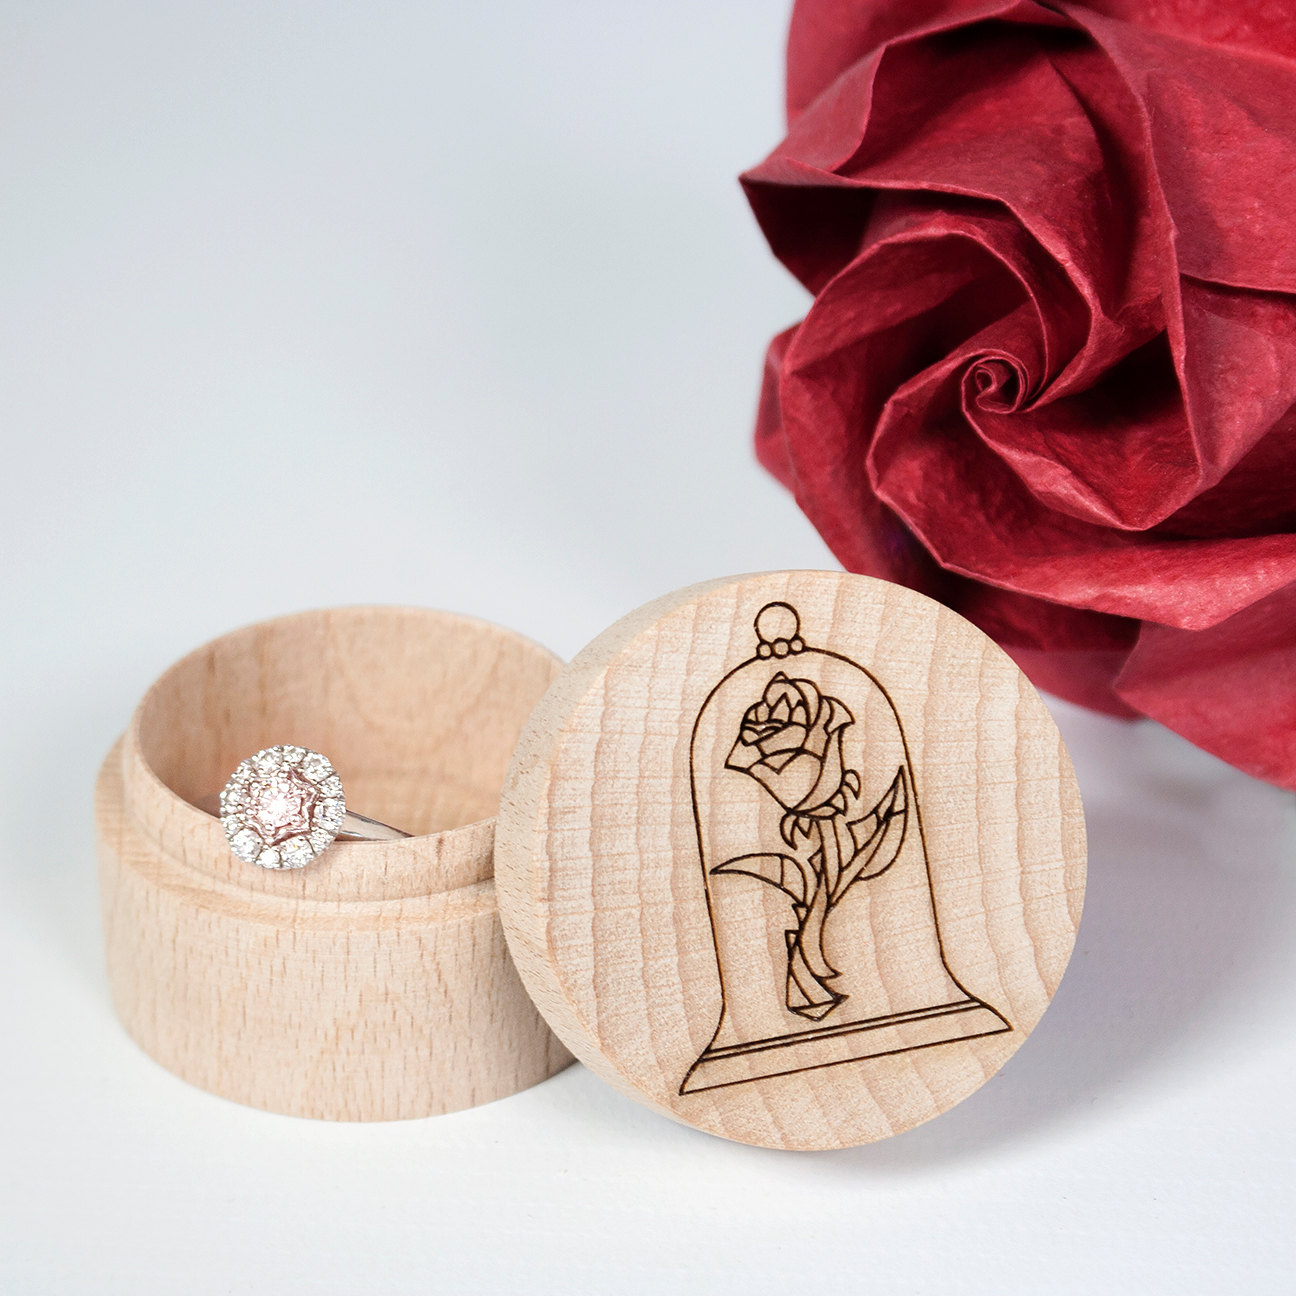 Rose Engraved Wood Ring Box